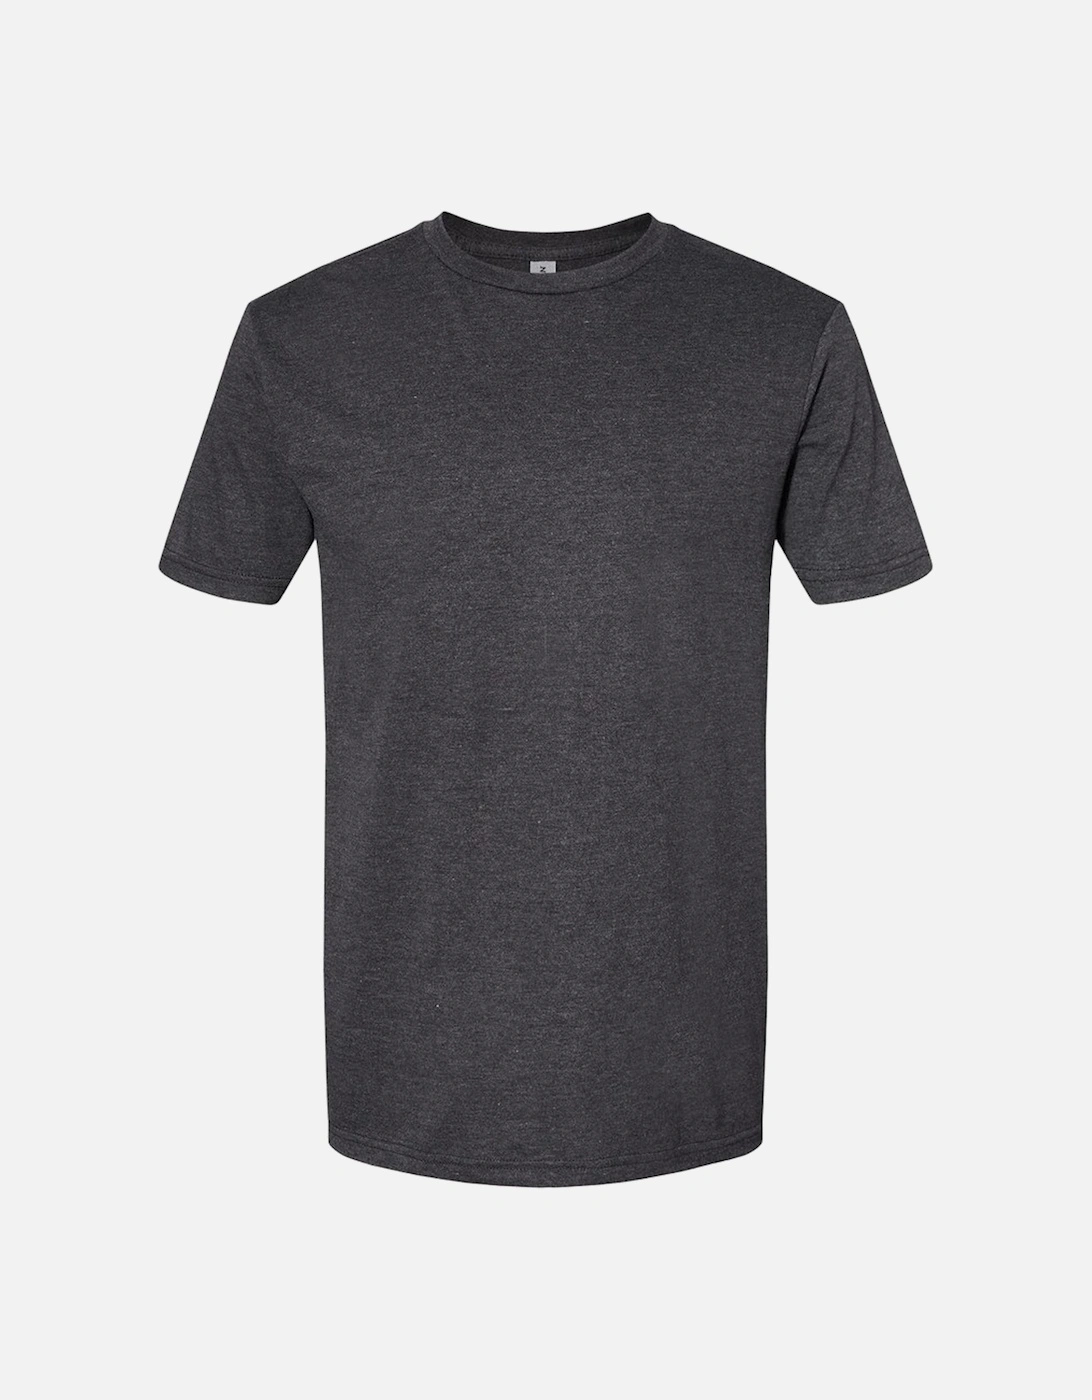 Unisex Adult Softstyle CVC T-Shirt, 4 of 3